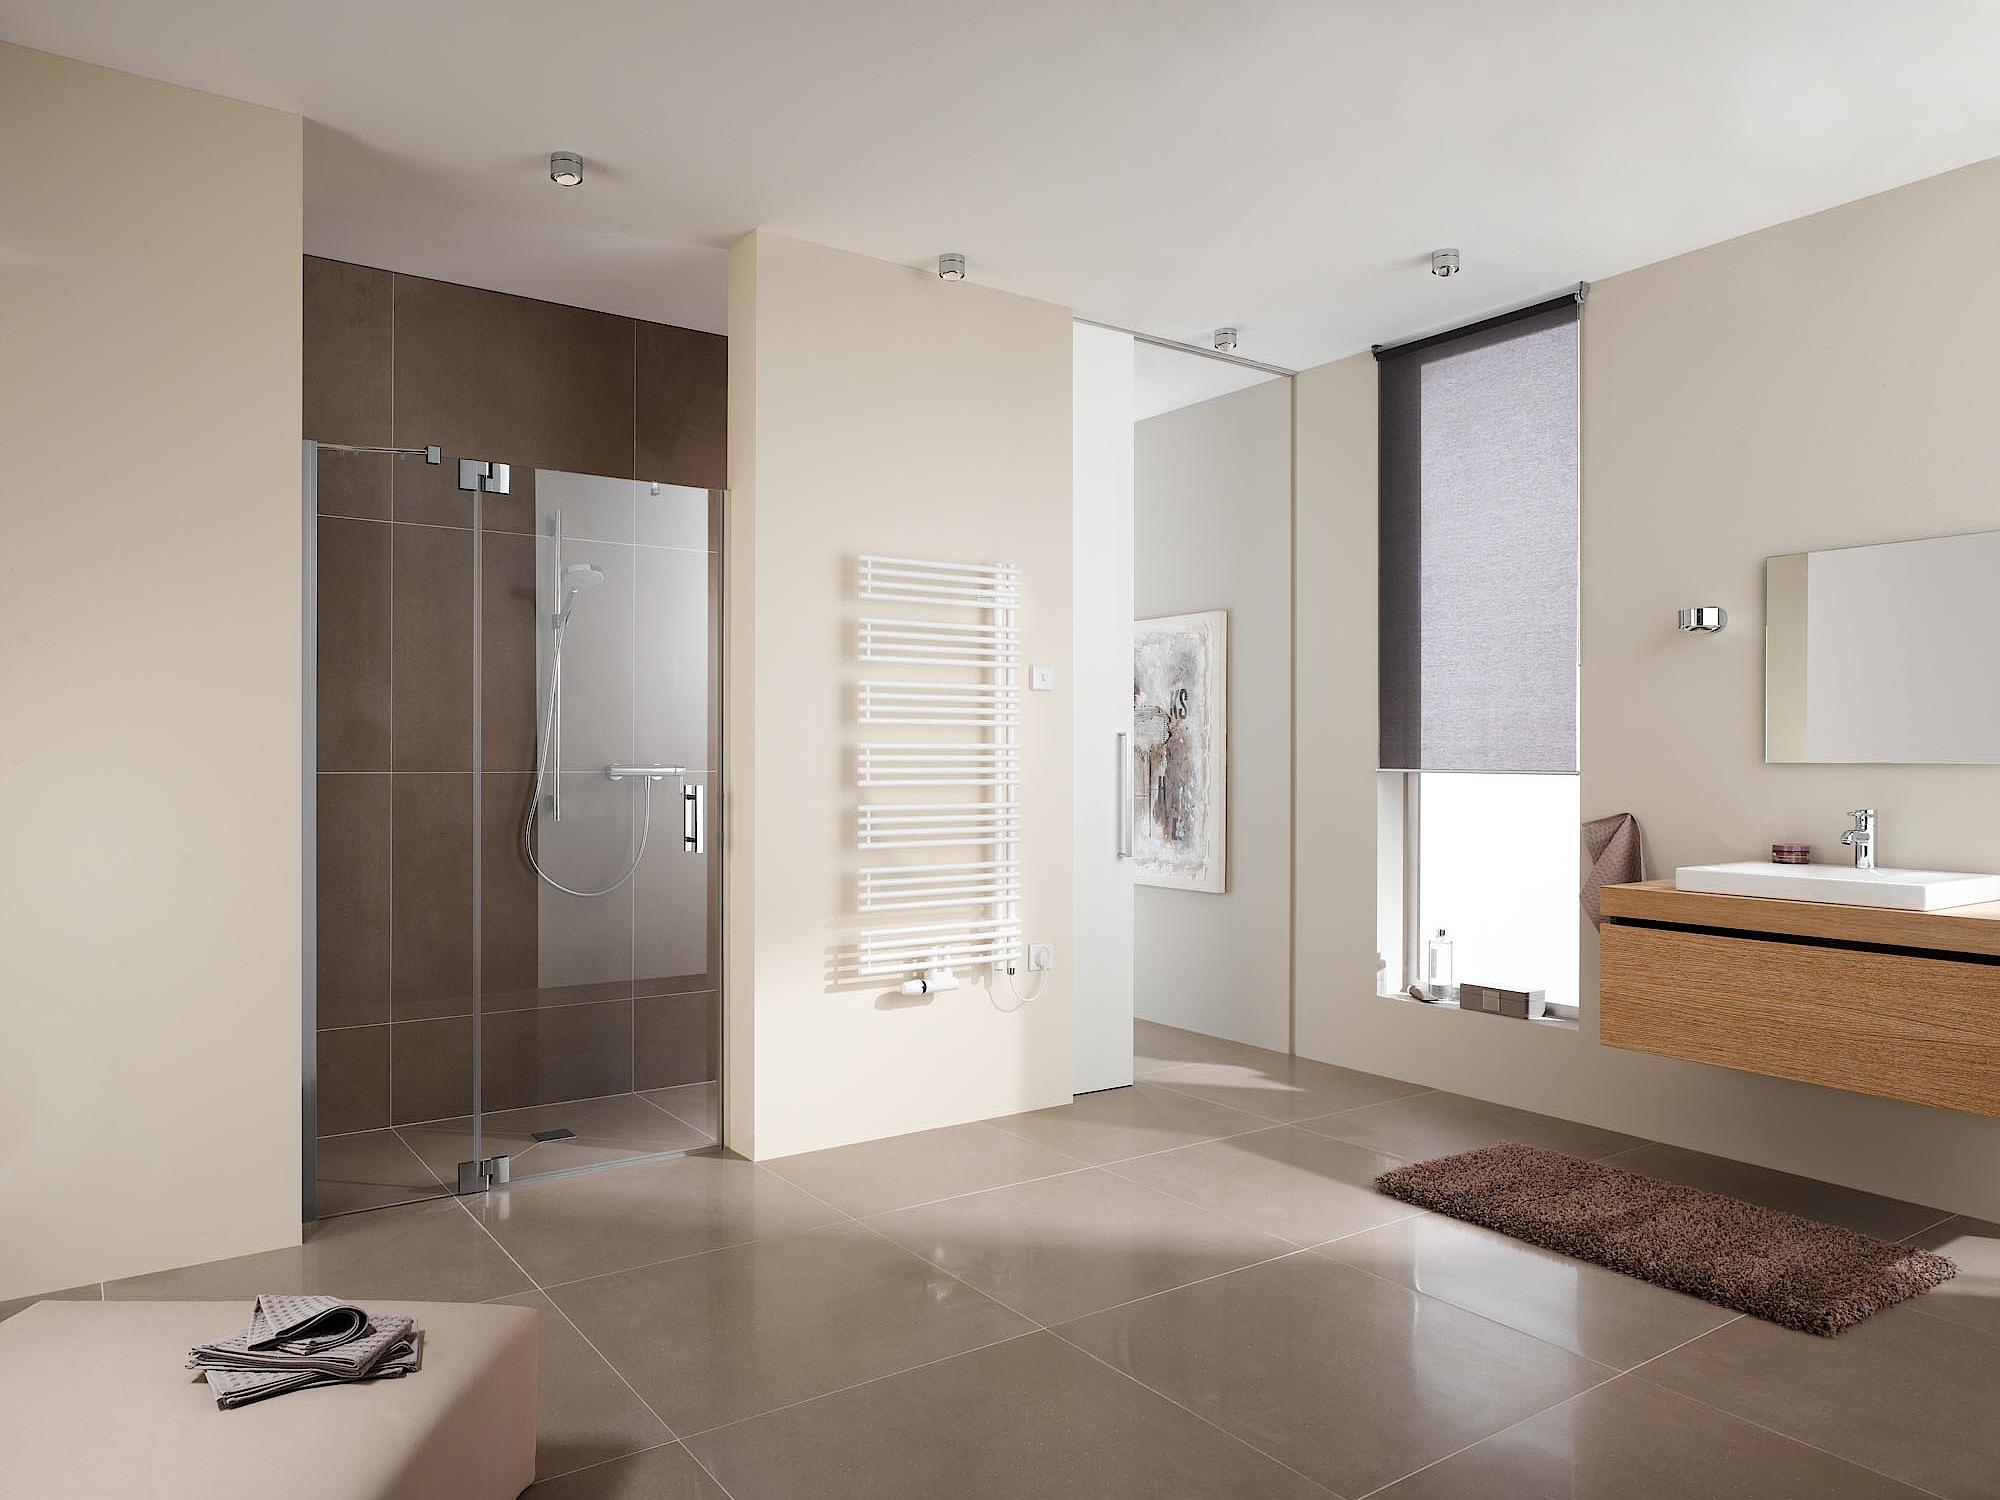 Il radiatore da bagno e di design Kermi Diveo trova la tonalità giusta per ogni gusto grazie all'ampia gamma di colori.